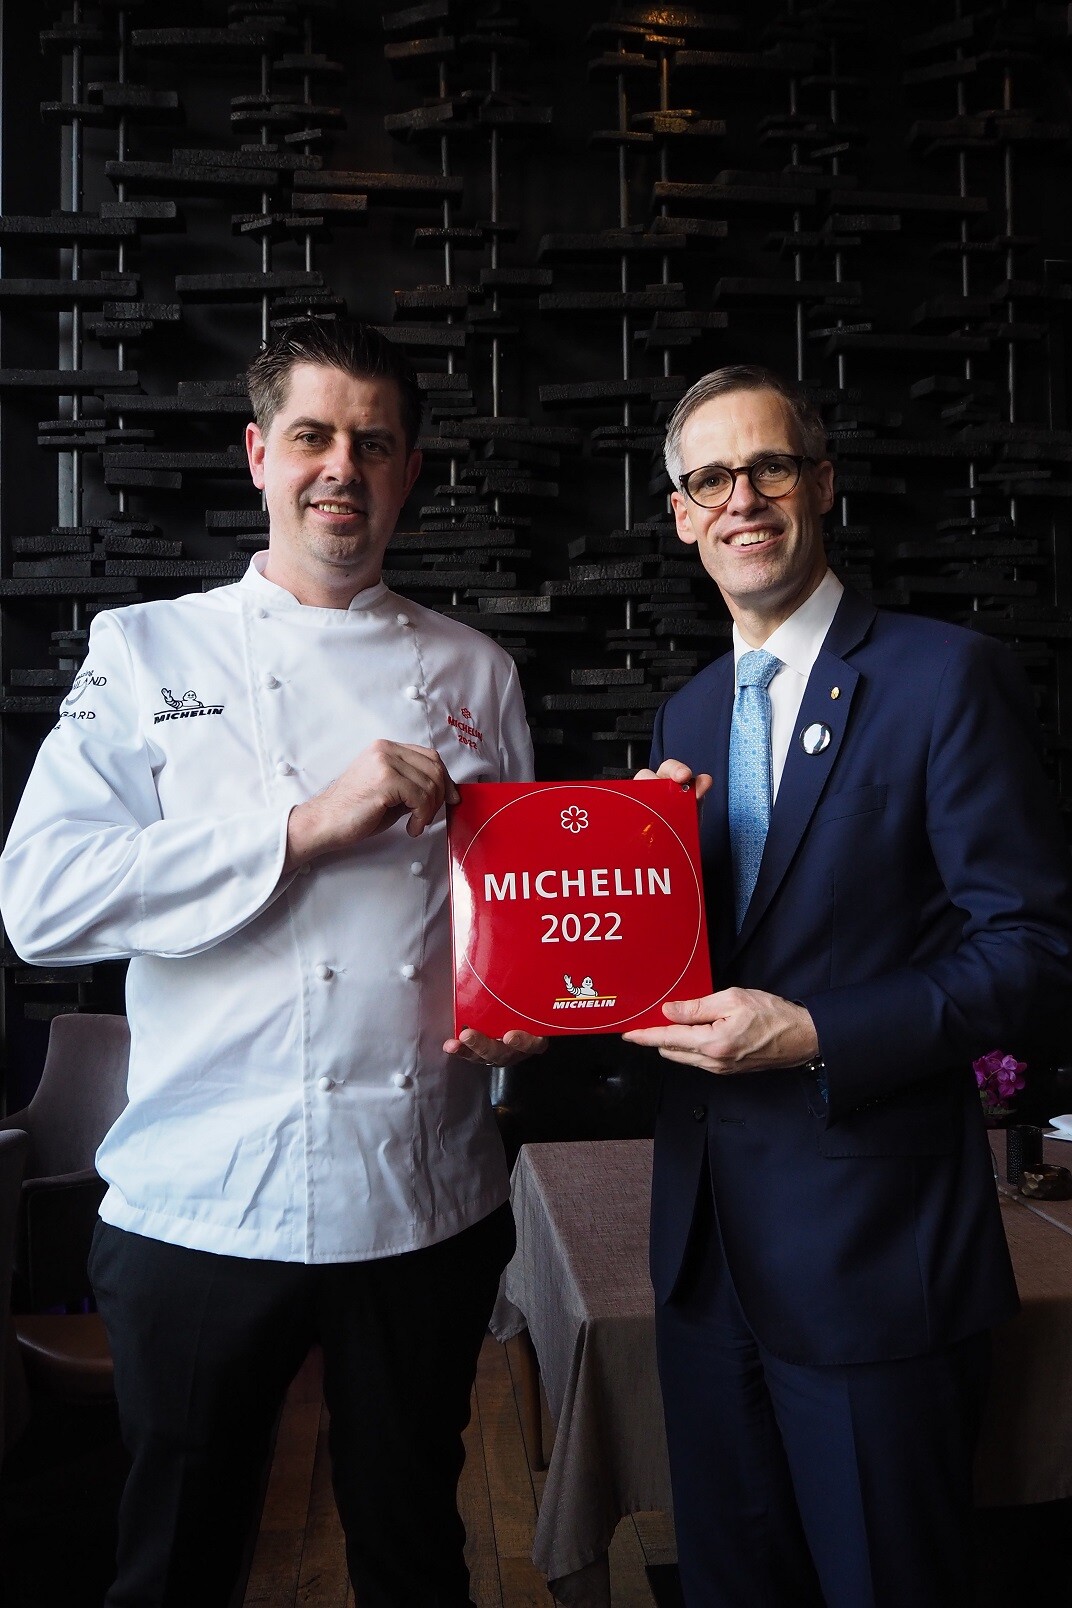 ห้องอาหารเอเลเมนท์ อินสไปร์ บาย เซล เบลอ ได้รับรางวัล 1 ดาวมิชลิน จากคู่มือแนะนำร้านอาหารและที่พักระดับโลก 'มิชลิน ไกด์' ติดต่อกันเป็นปีที่ 5